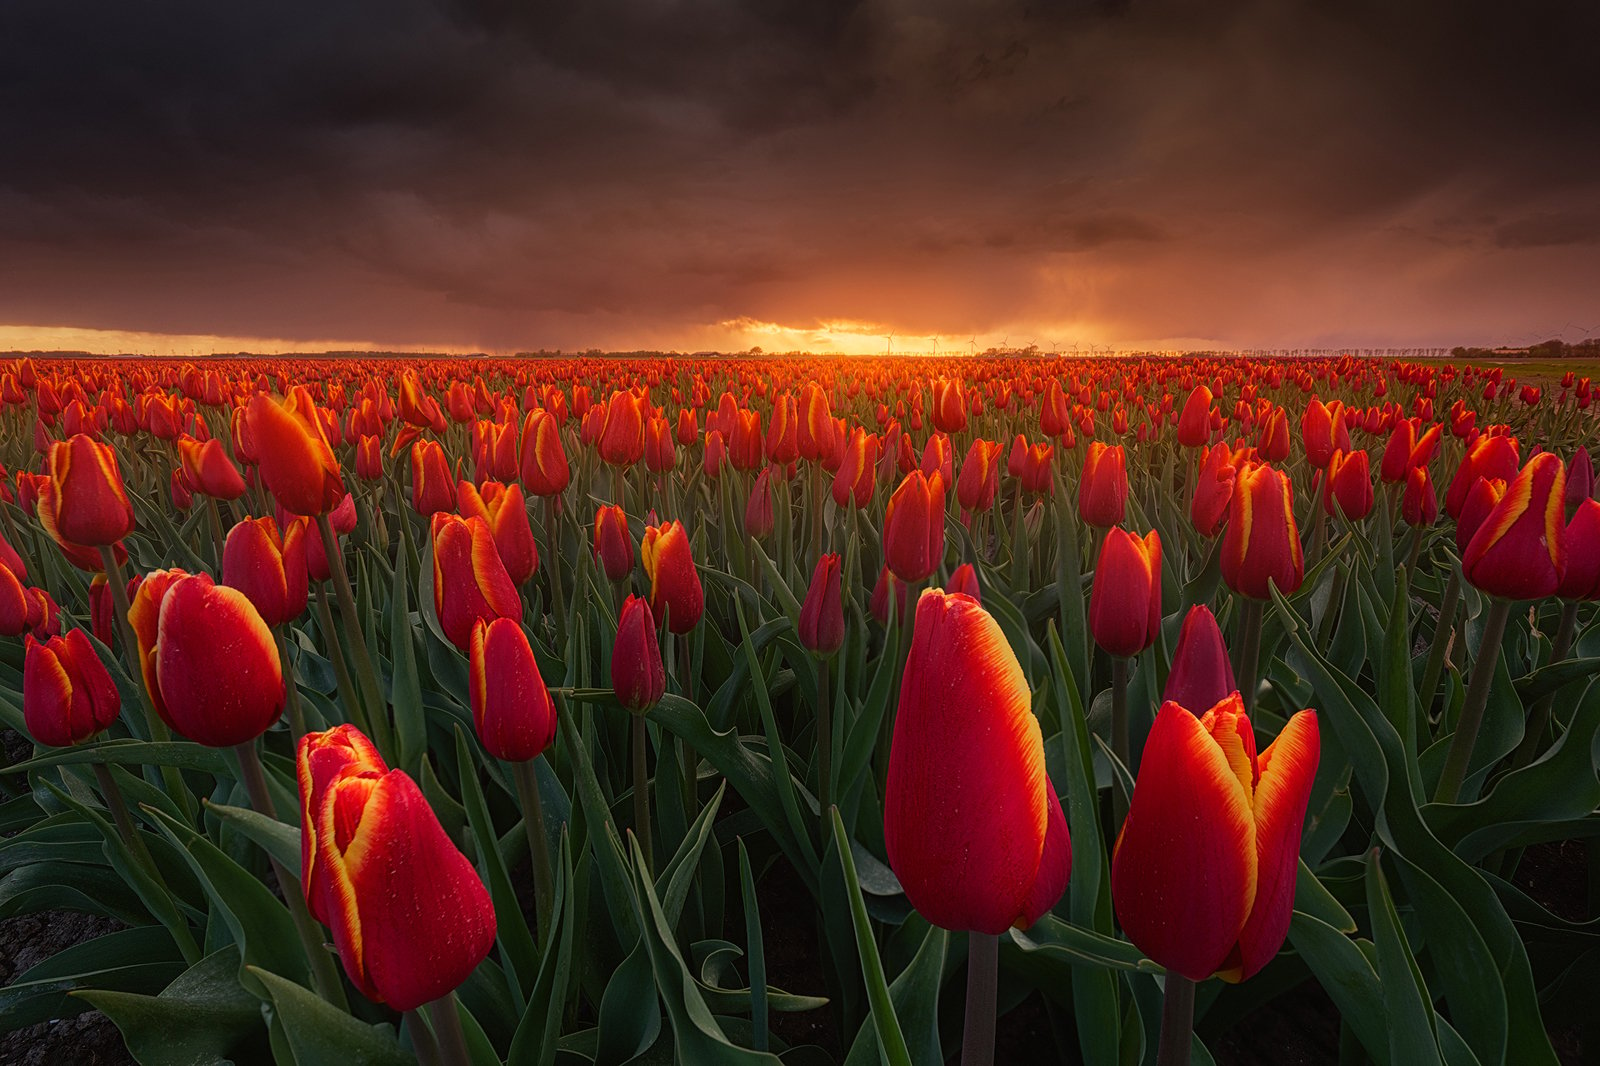 Flower field etiquette - Tulips in Holland